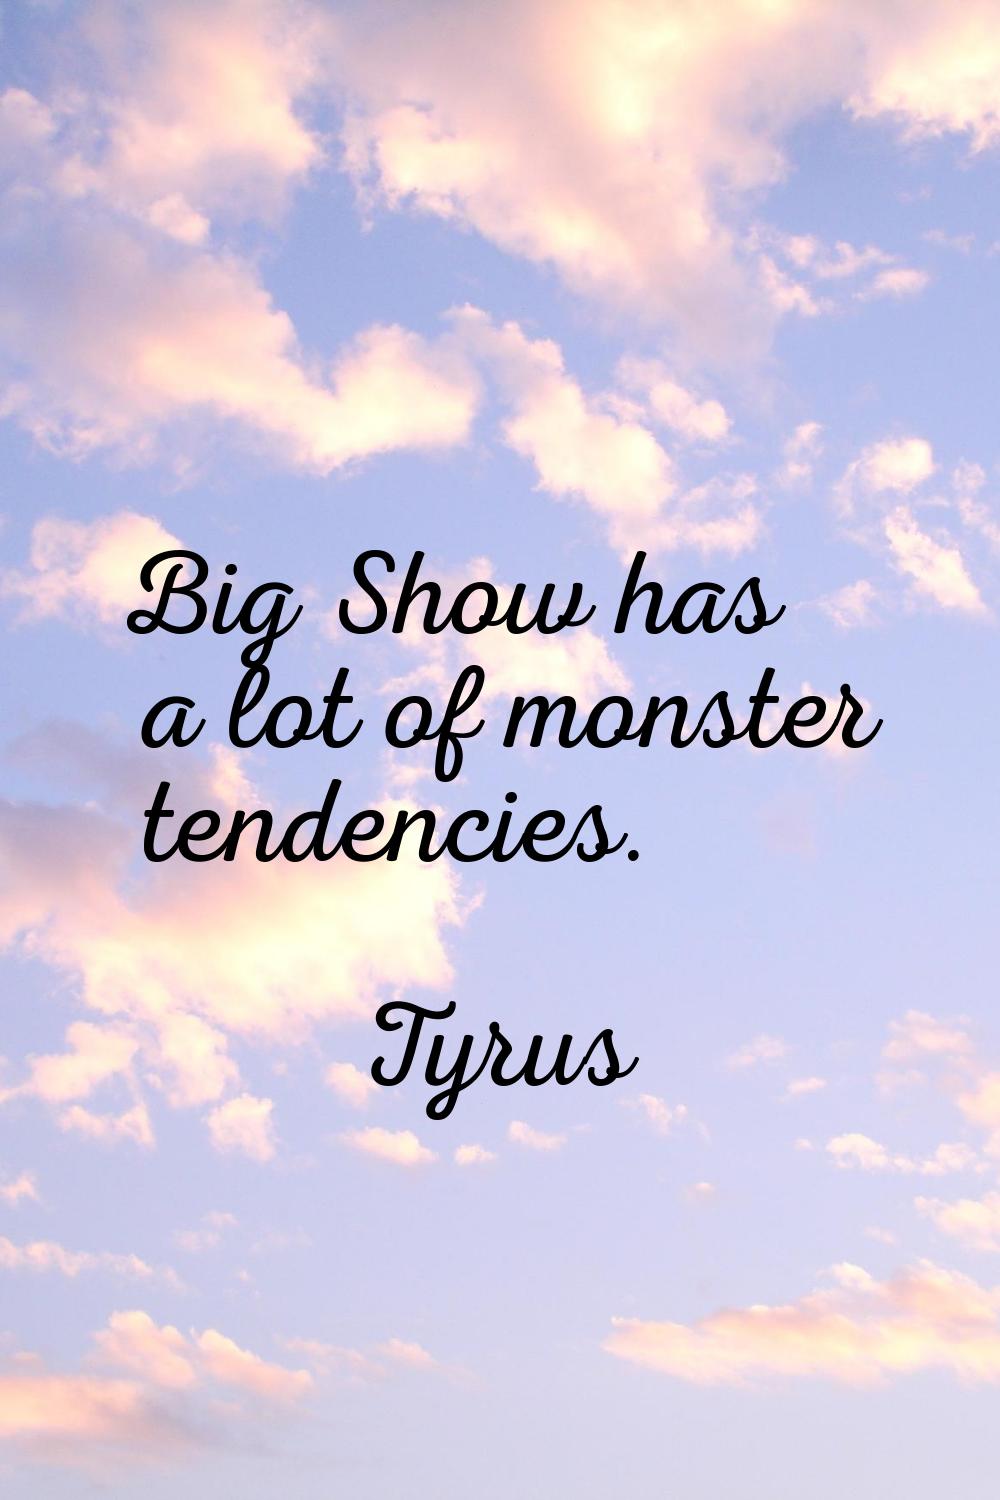 Big Show has a lot of monster tendencies.